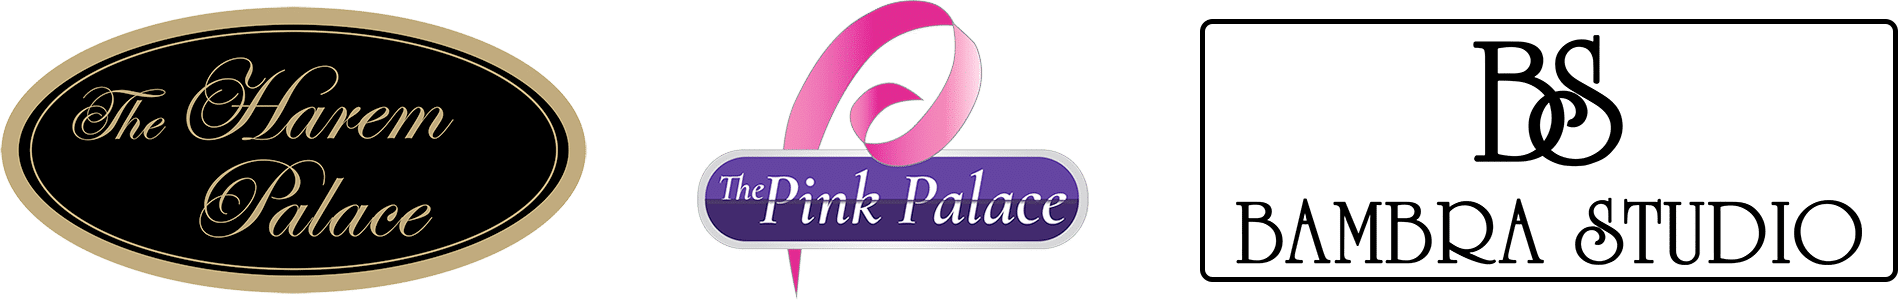 Harem, Pink Palace & Bambra Studio logos